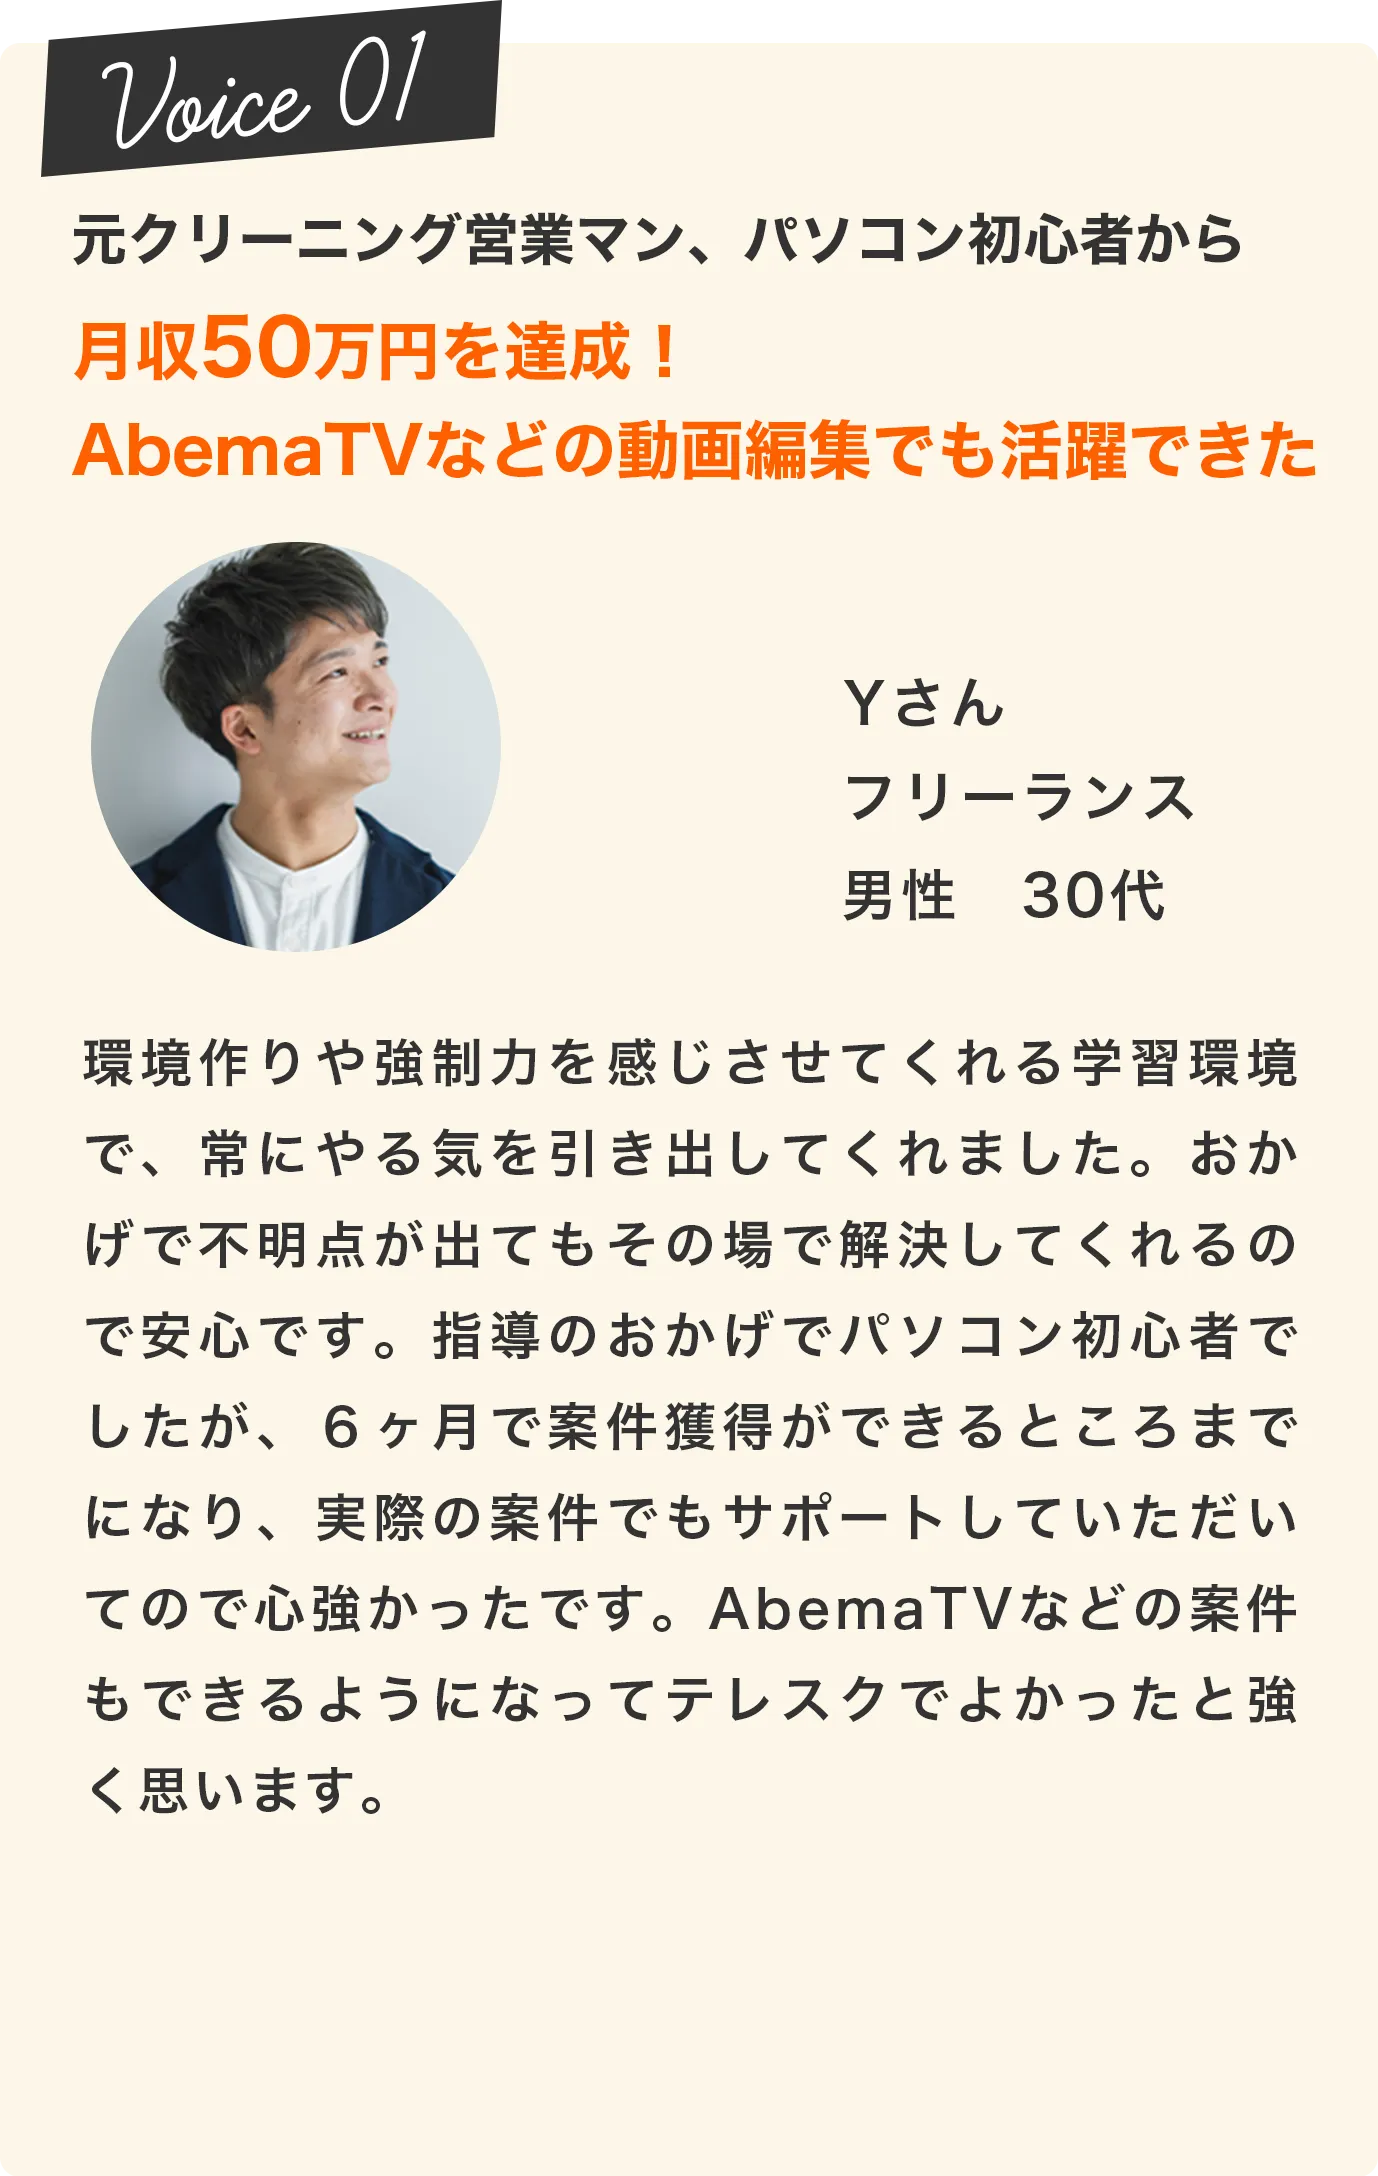 月収50万円を達成！AbemaTVなどの動画編集でも活躍できた